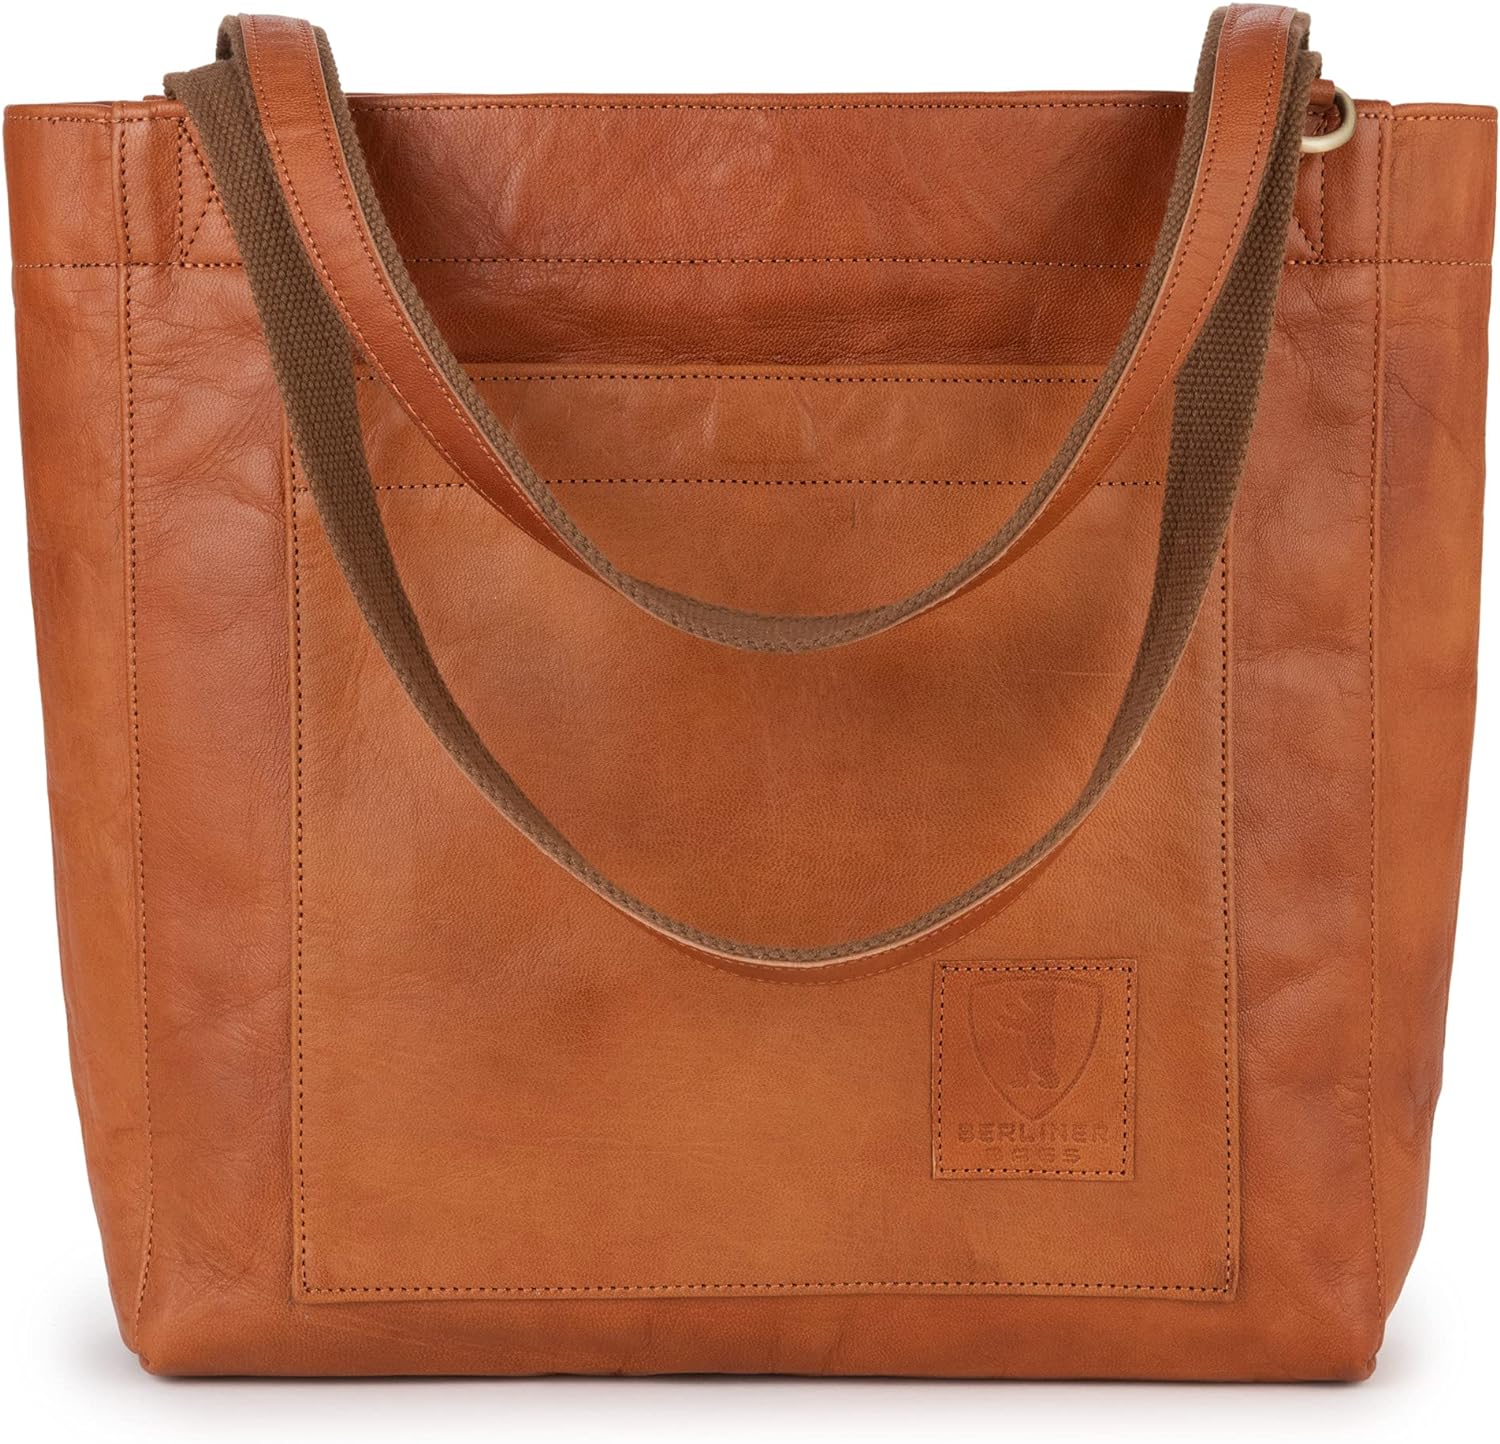 Sac Shopper Seville Vintage Marron - Berliner Bags Cabas en Cuir pour Femme